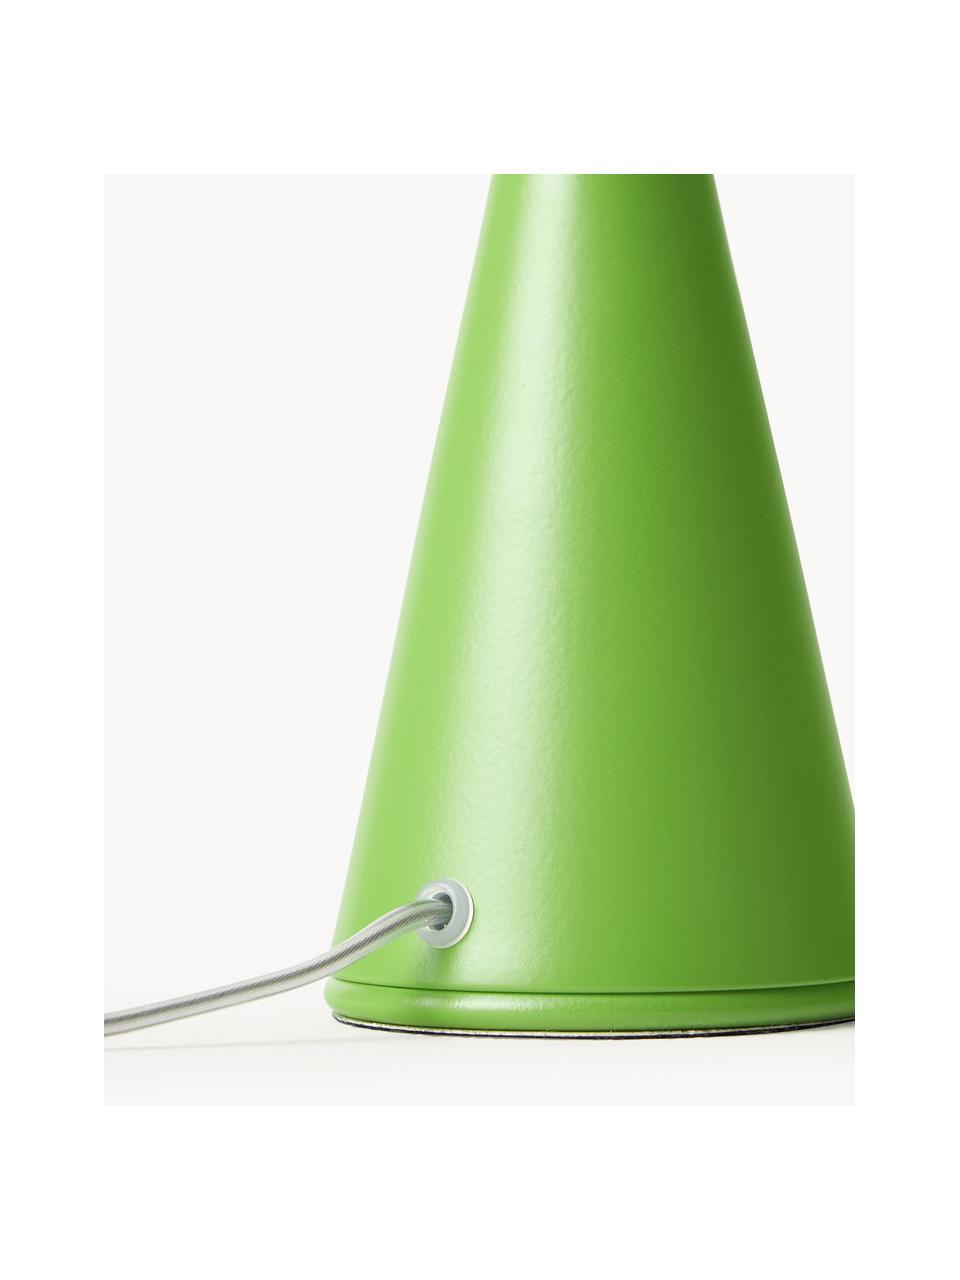 Malá stolní lampa Bilia, ručně vyrobená, Bílá, zelená, Ø 12 cm, V 26 cm